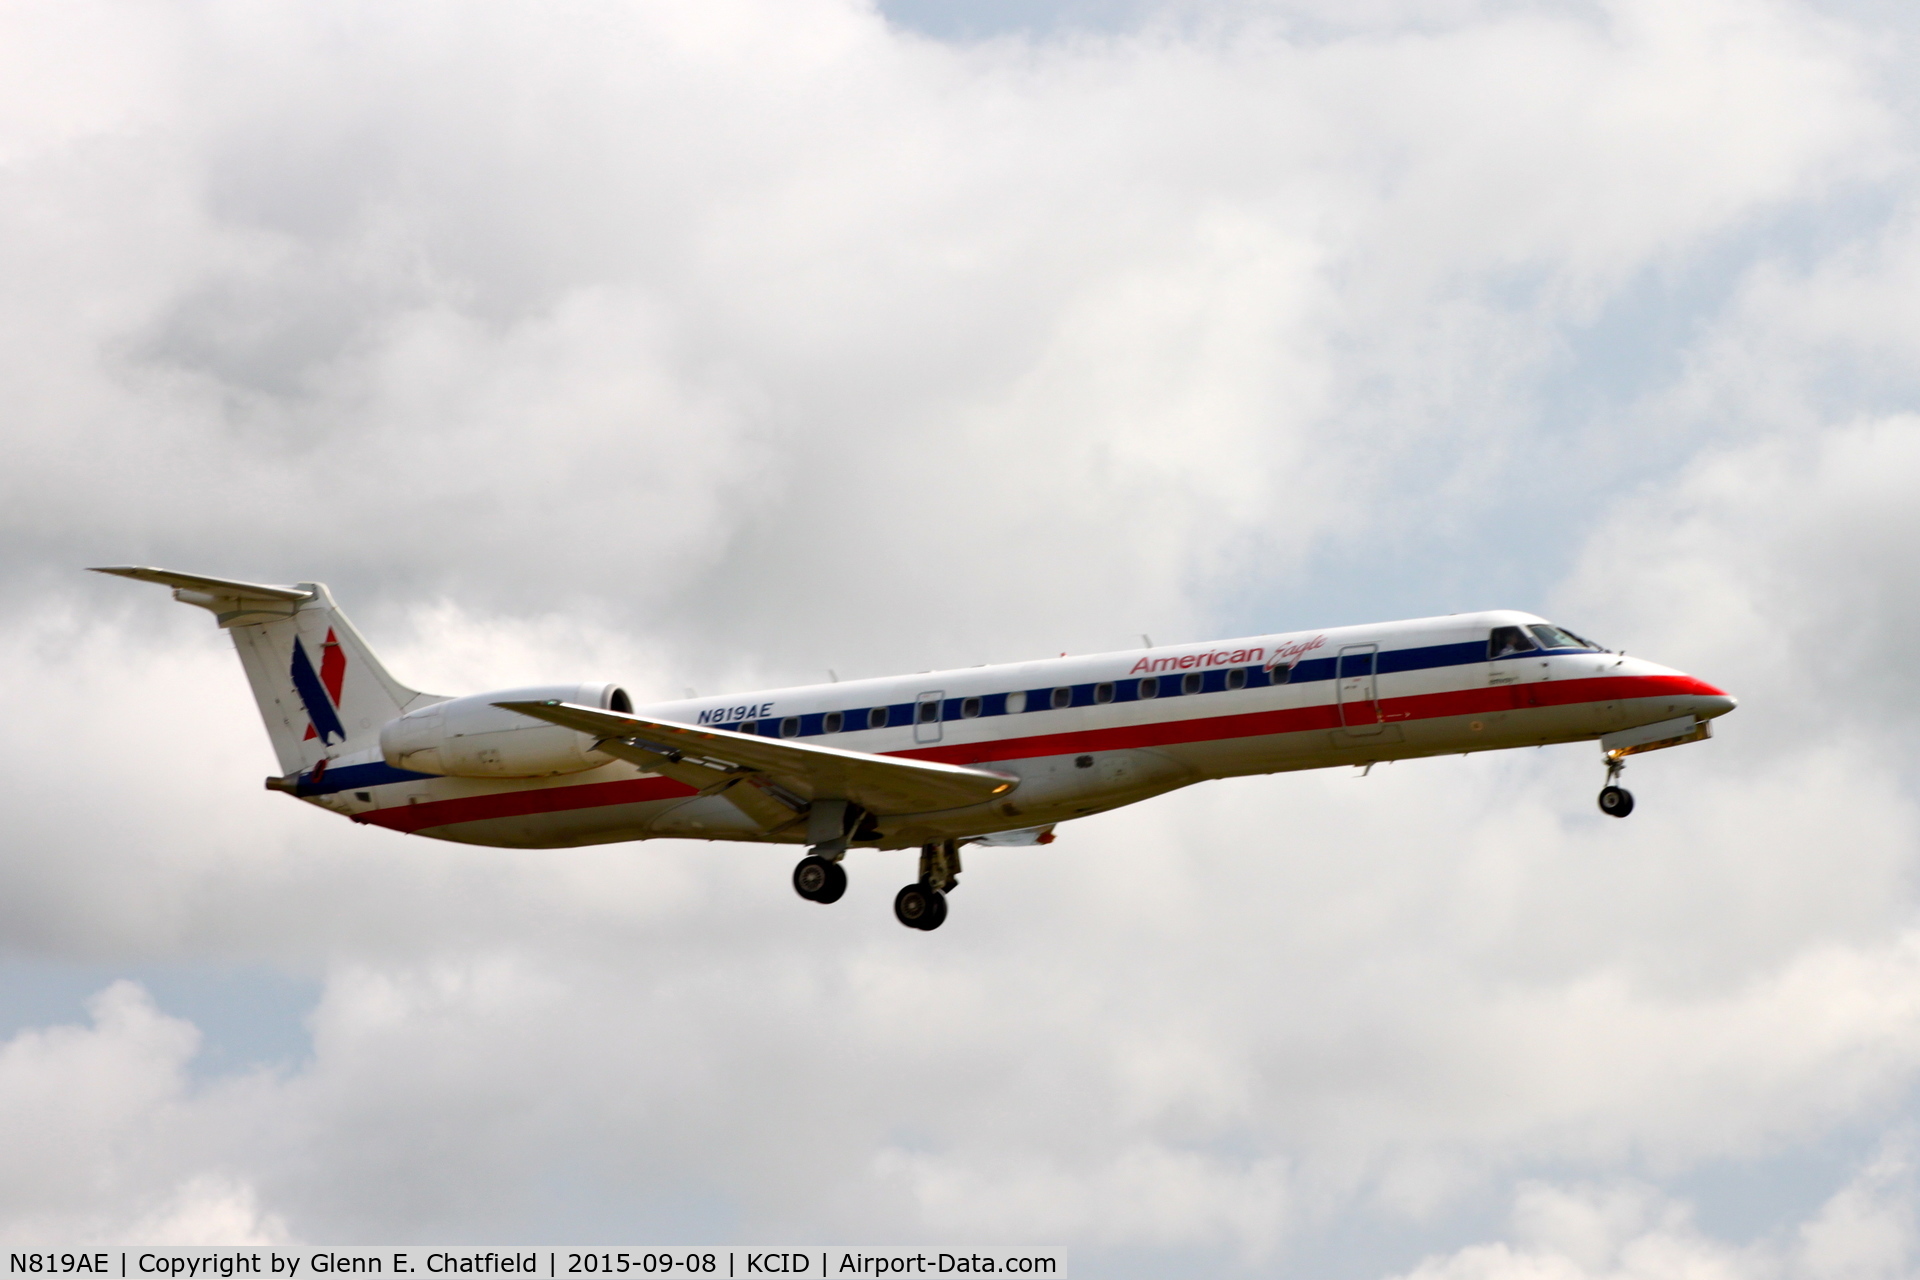 N819AE, 2002 Embraer ERJ-140LR (EMB-135KL) C/N 145566, Final approach Runway 27